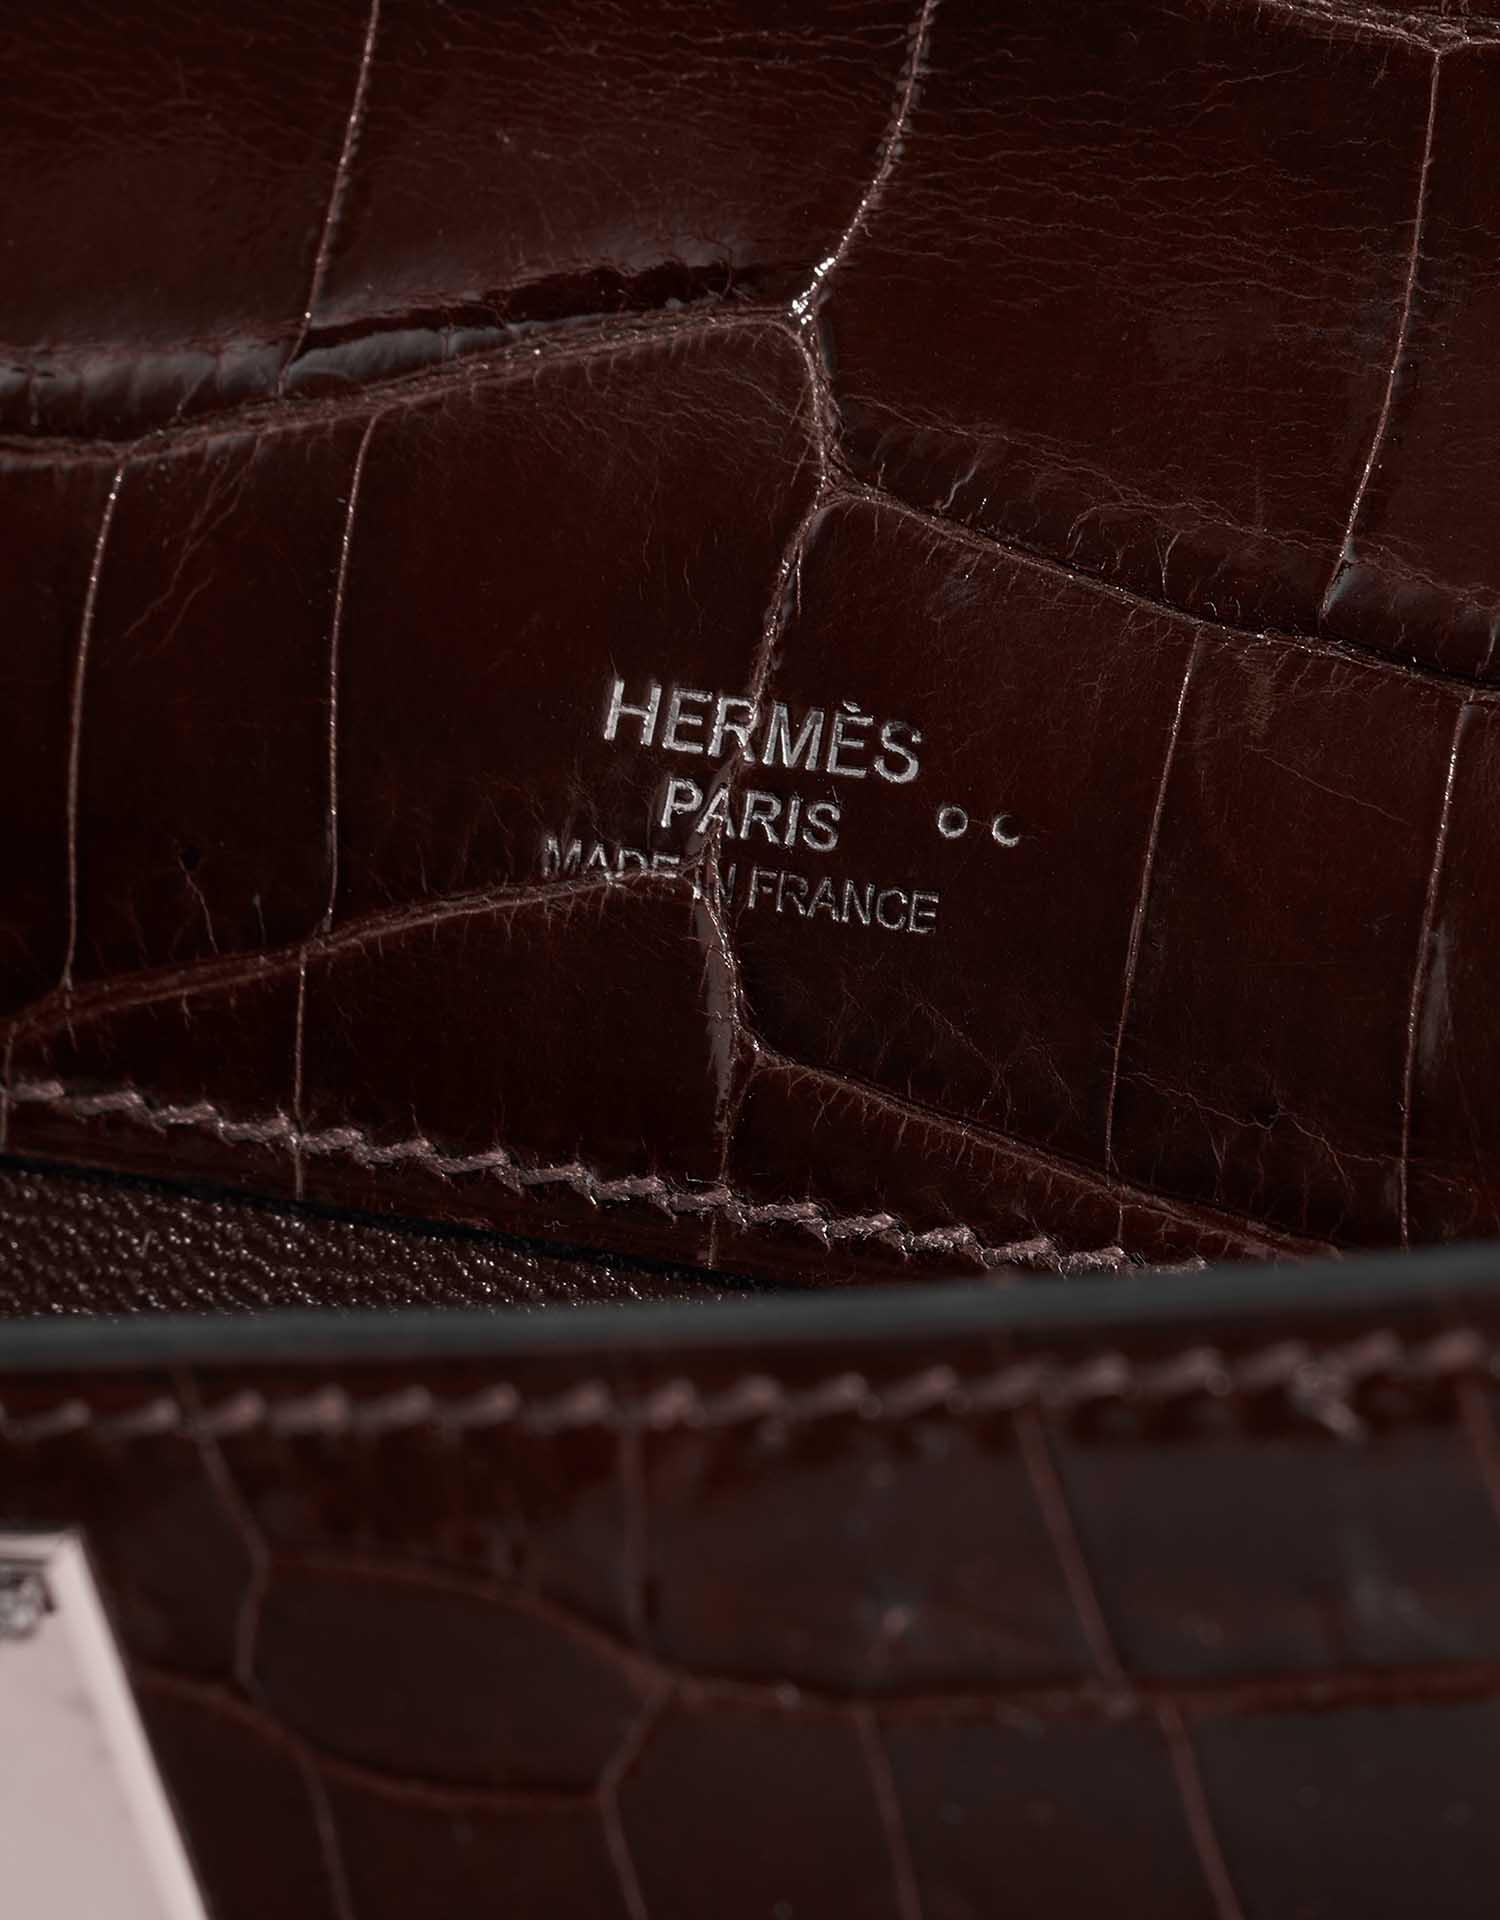 Sac Hermès d'occasion Kelly Cut Clutch Niloticus Crocodile Chocolat Brown Logo | Vendez votre sac de créateur sur Saclab.com